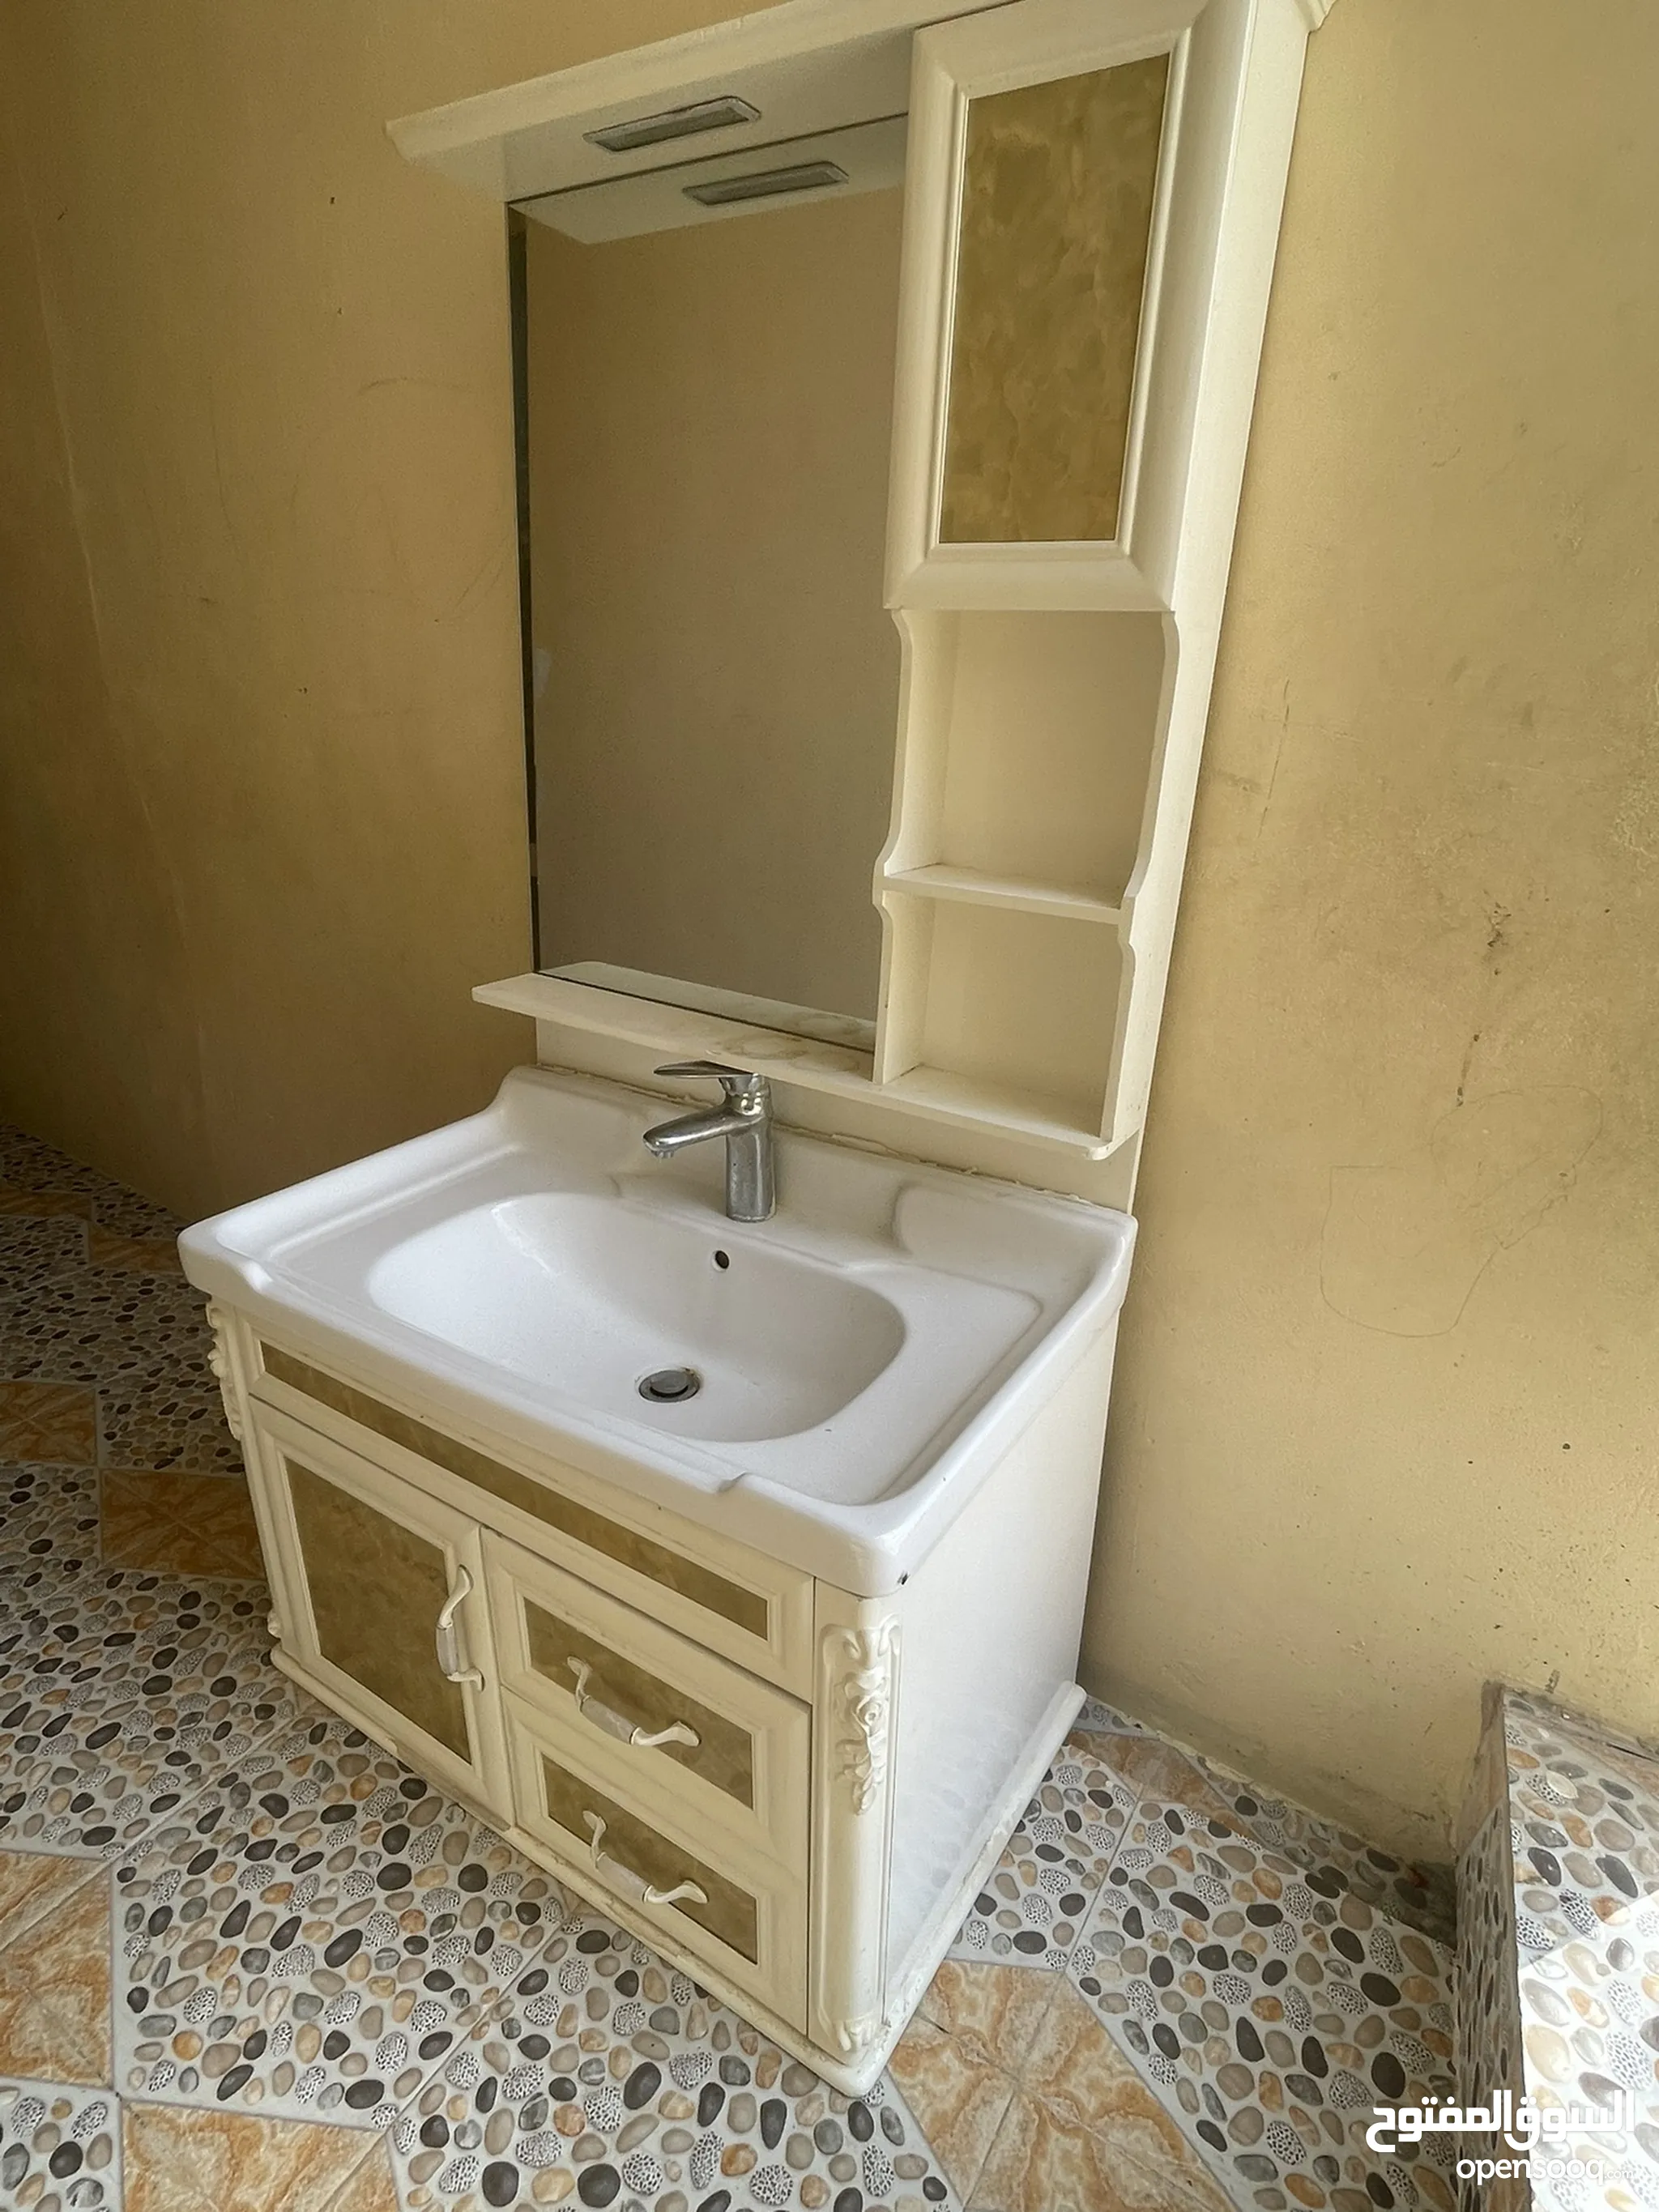 اطقم حمامات للبيع : حمامات تركي : حمامات معلقة : ارخص الاسعار في عُمان |  السوق المفتوح